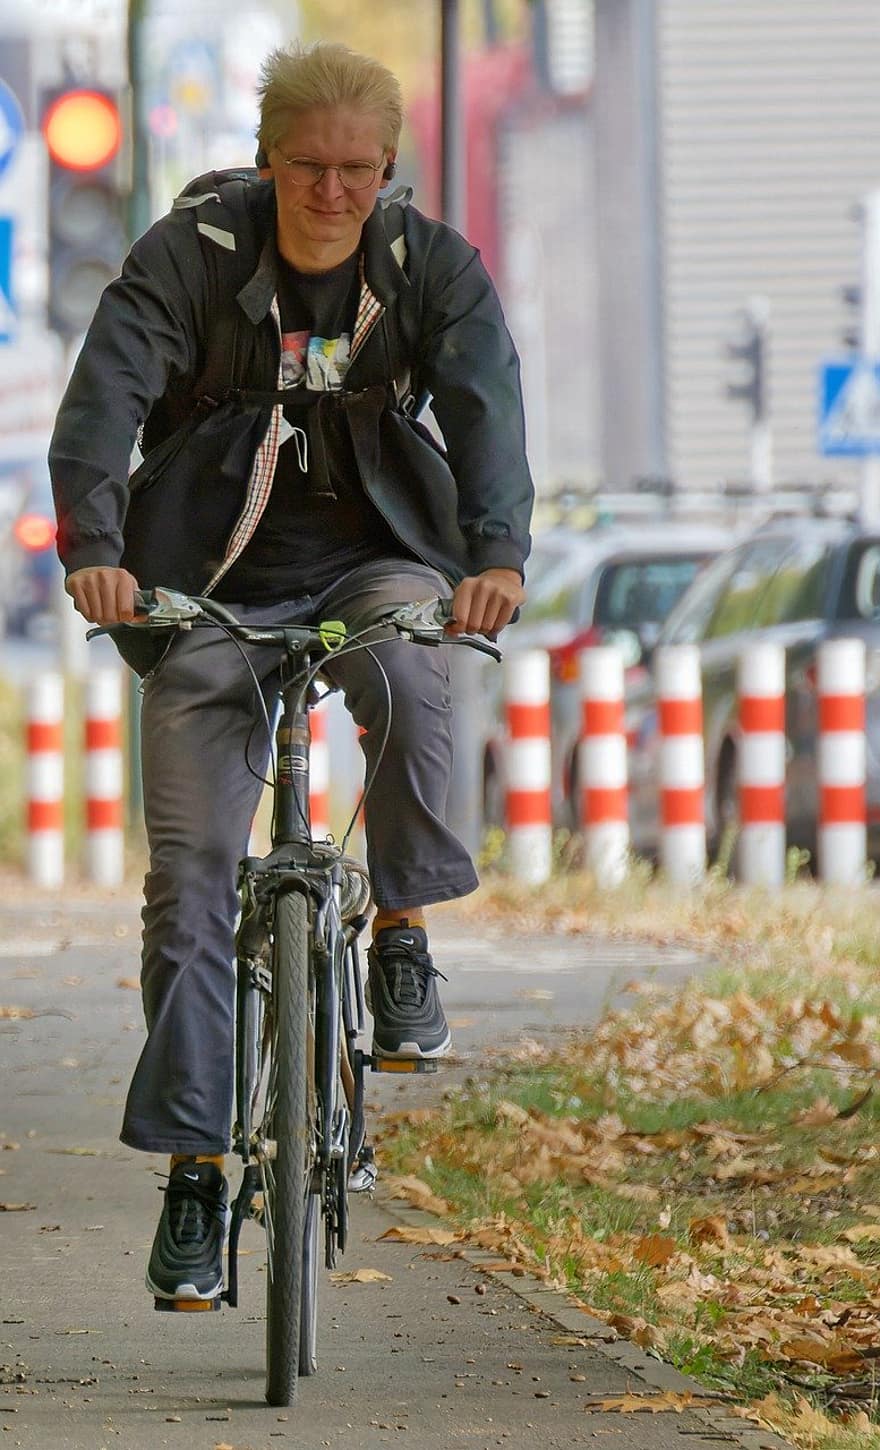 ชาย, รถจักรยาน, นั่ง, กิจกรรม, นักขี่รถจักรยาน, การขี่, จักรยาน, ในเมือง, การขี่จักรยาน, ผู้ชาย, คนคนหนึ่ง